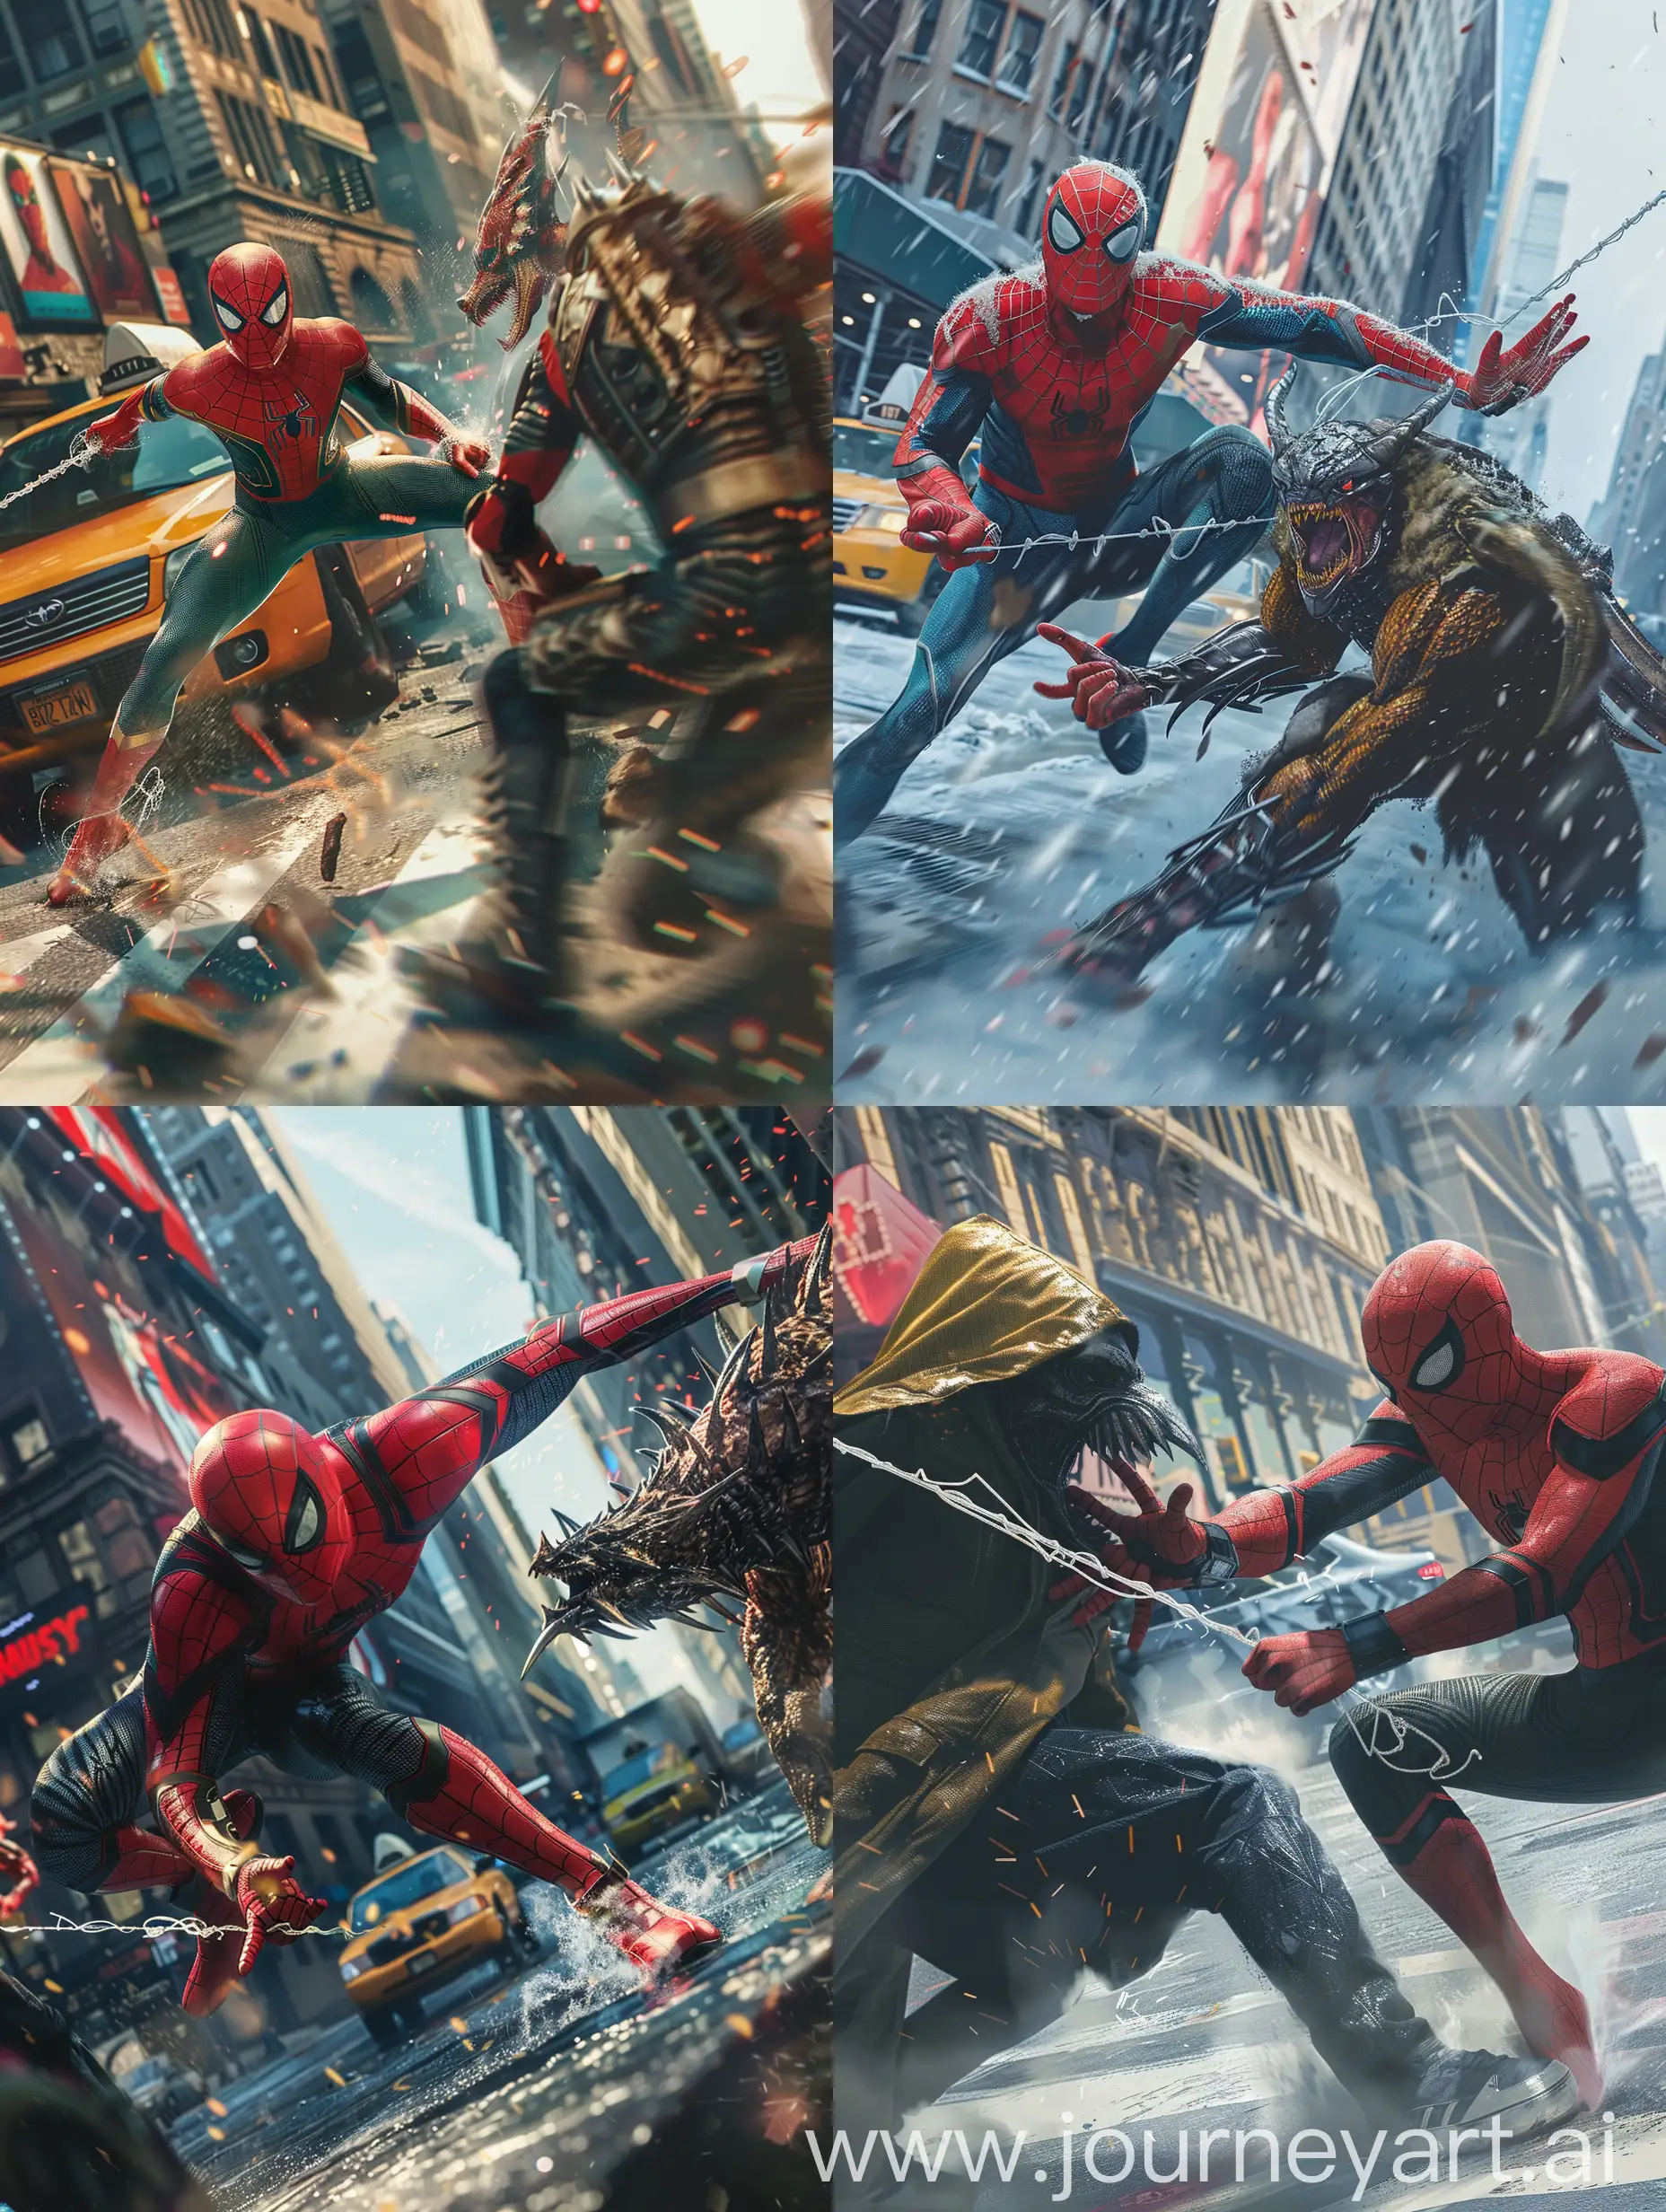 Epic-SciFi-Showdown-SpiderMan-vs-Kraven-in-New-York-City